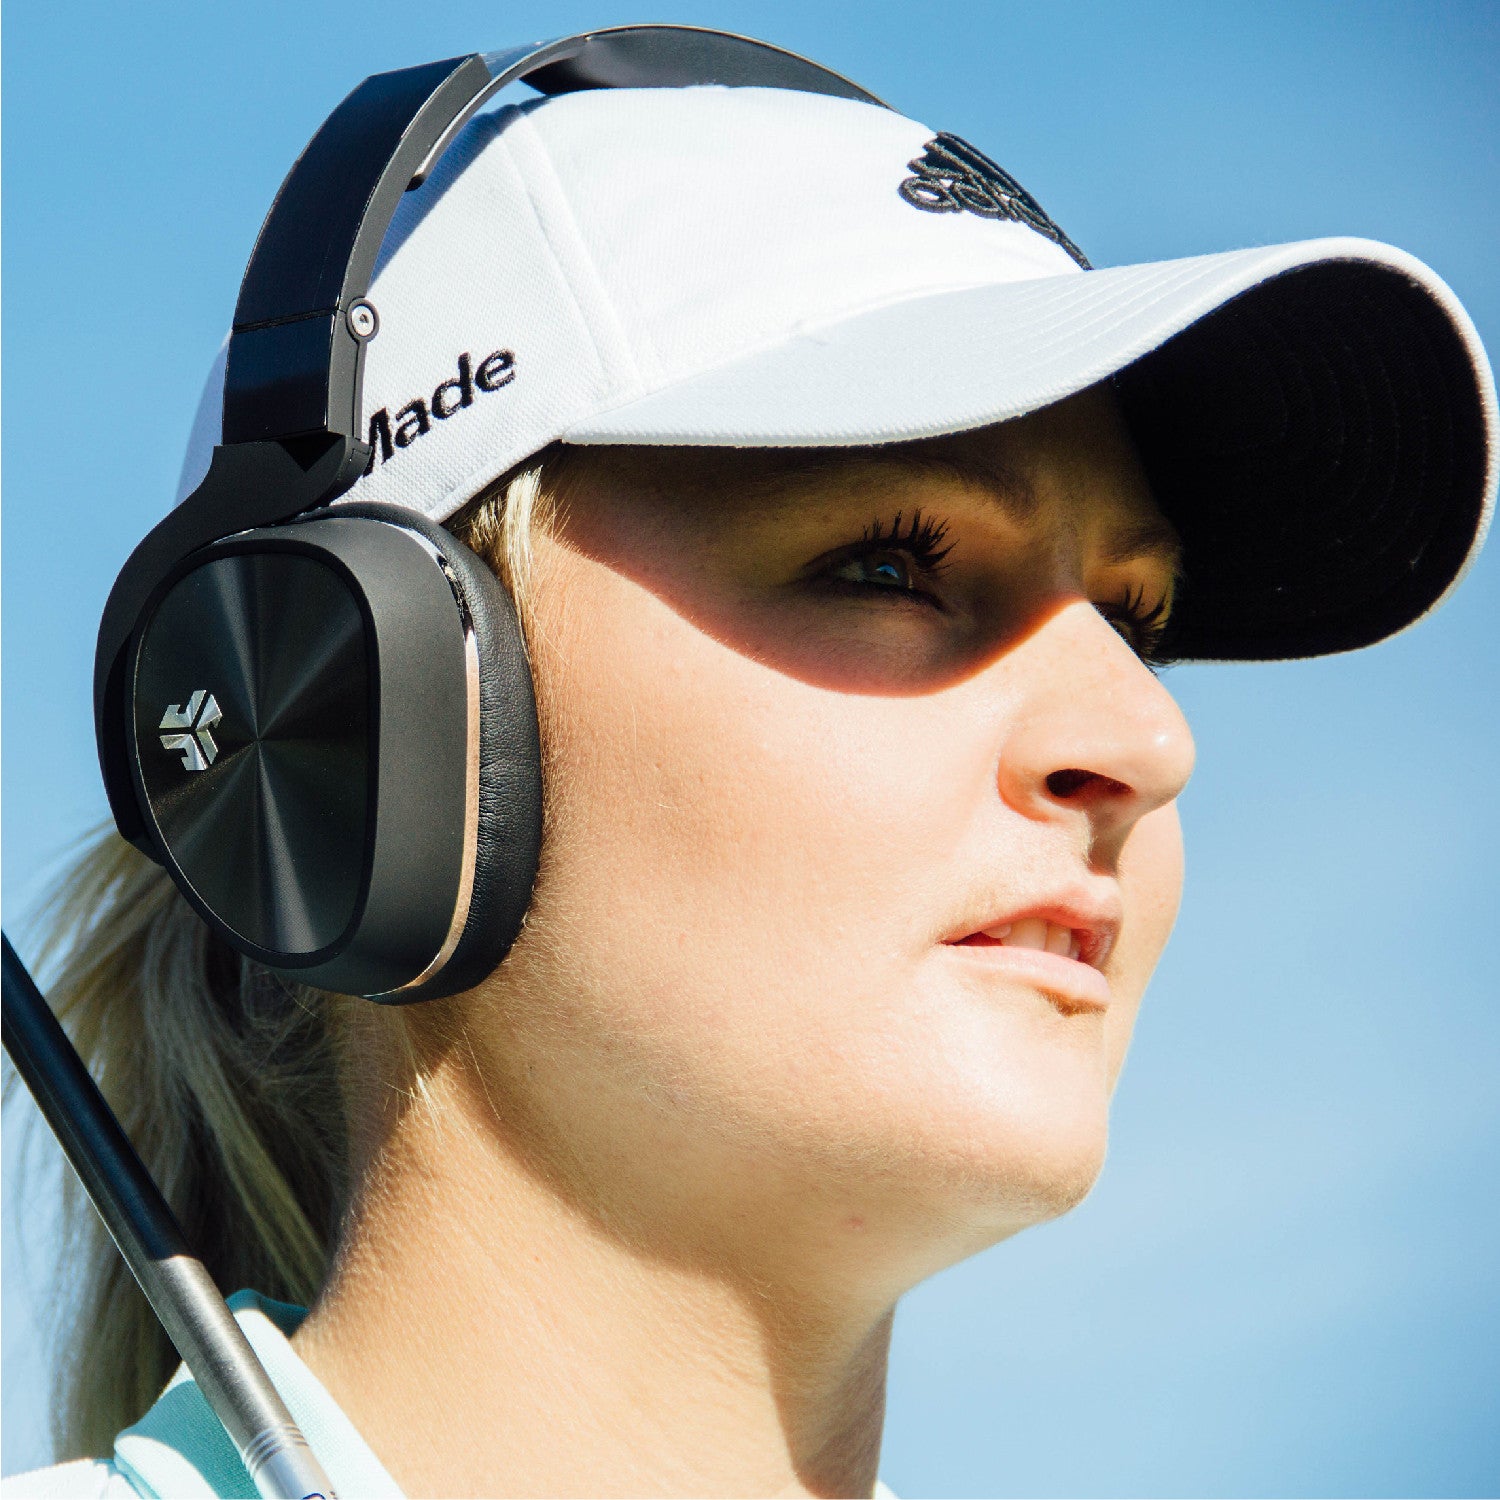 Meet Anna Nordqvist, LPGA Golfer